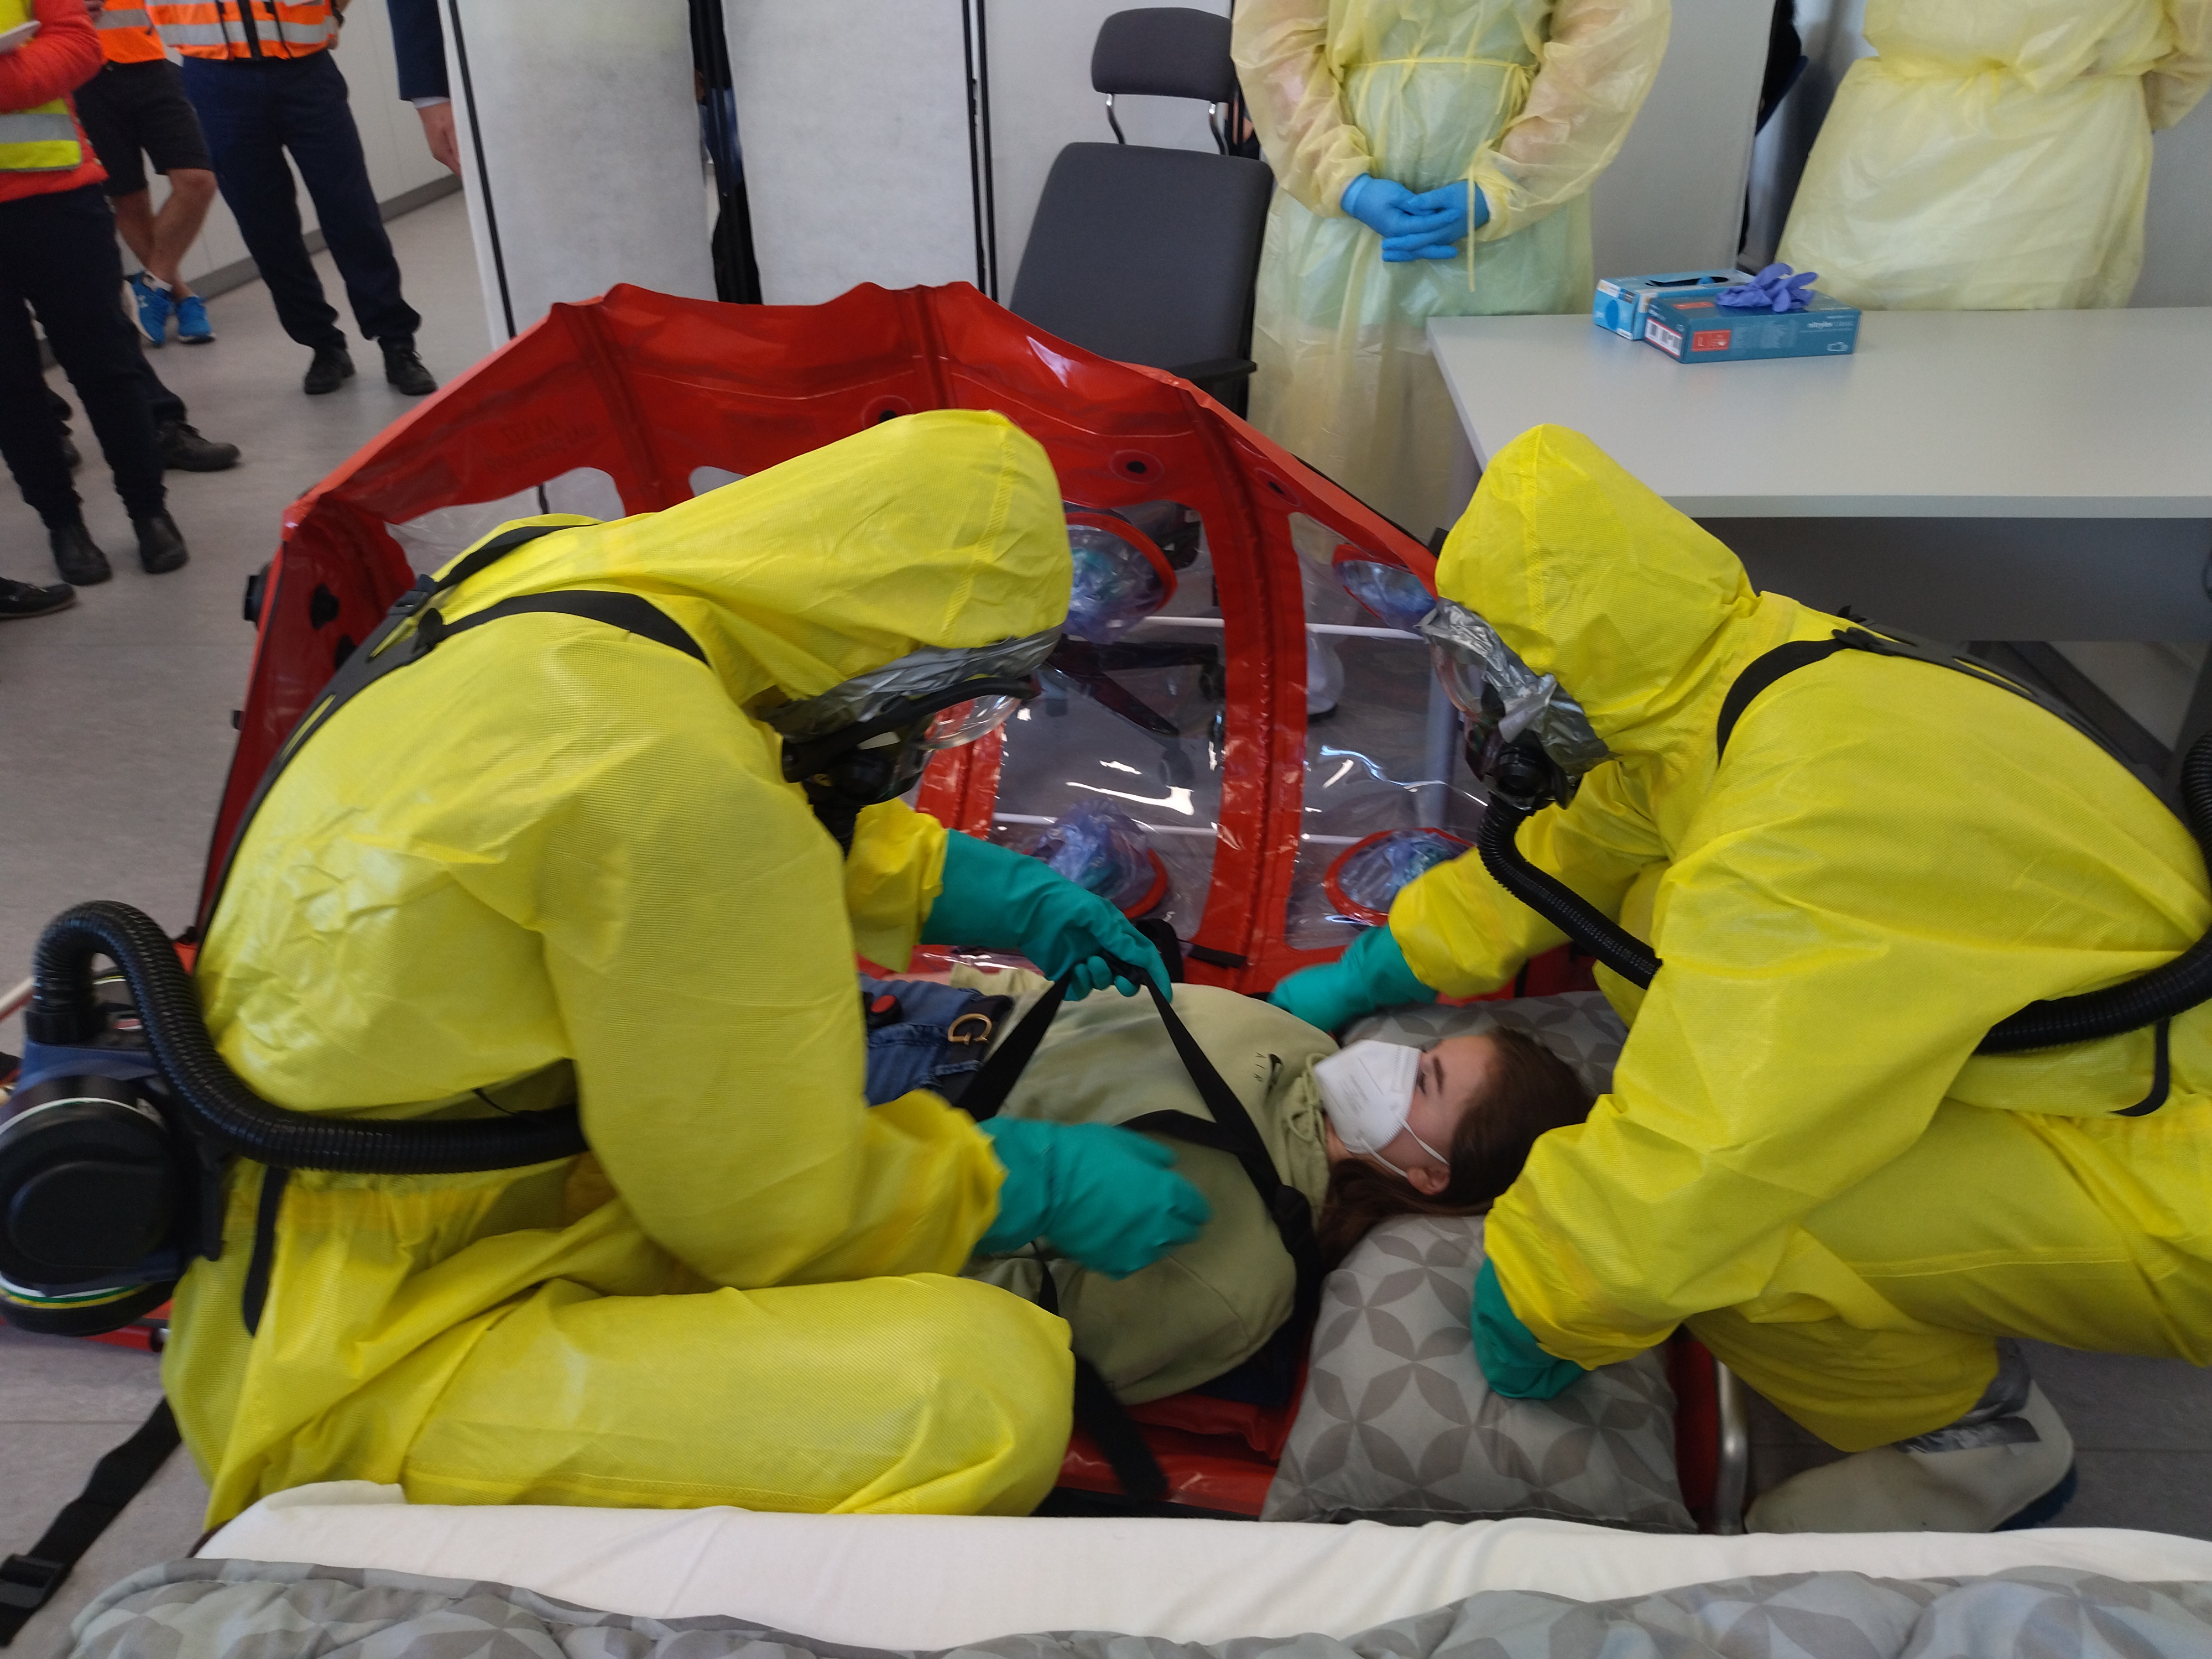 Fotka - Záchranný tým ukládá pacienta do ochranného vaku